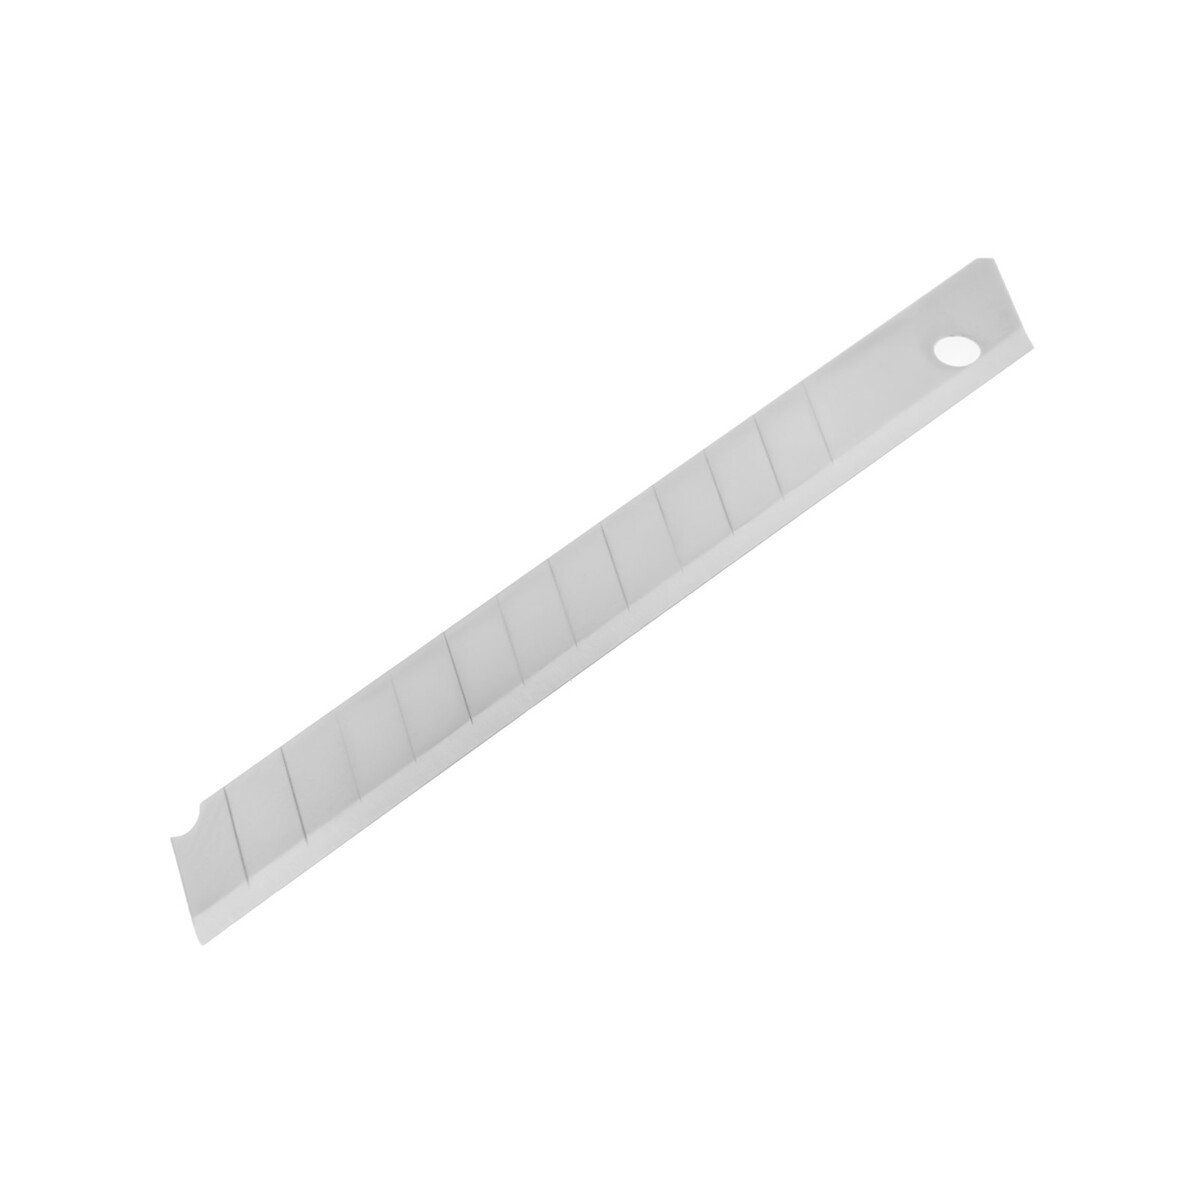 Лезвия для ножей тундра, сегментированные, 9 мм, 10 шт. лезвия для ножей тундра сегментированные 9 х 0 4 мм 10 контейнеров по 10 лезвий 100 шт